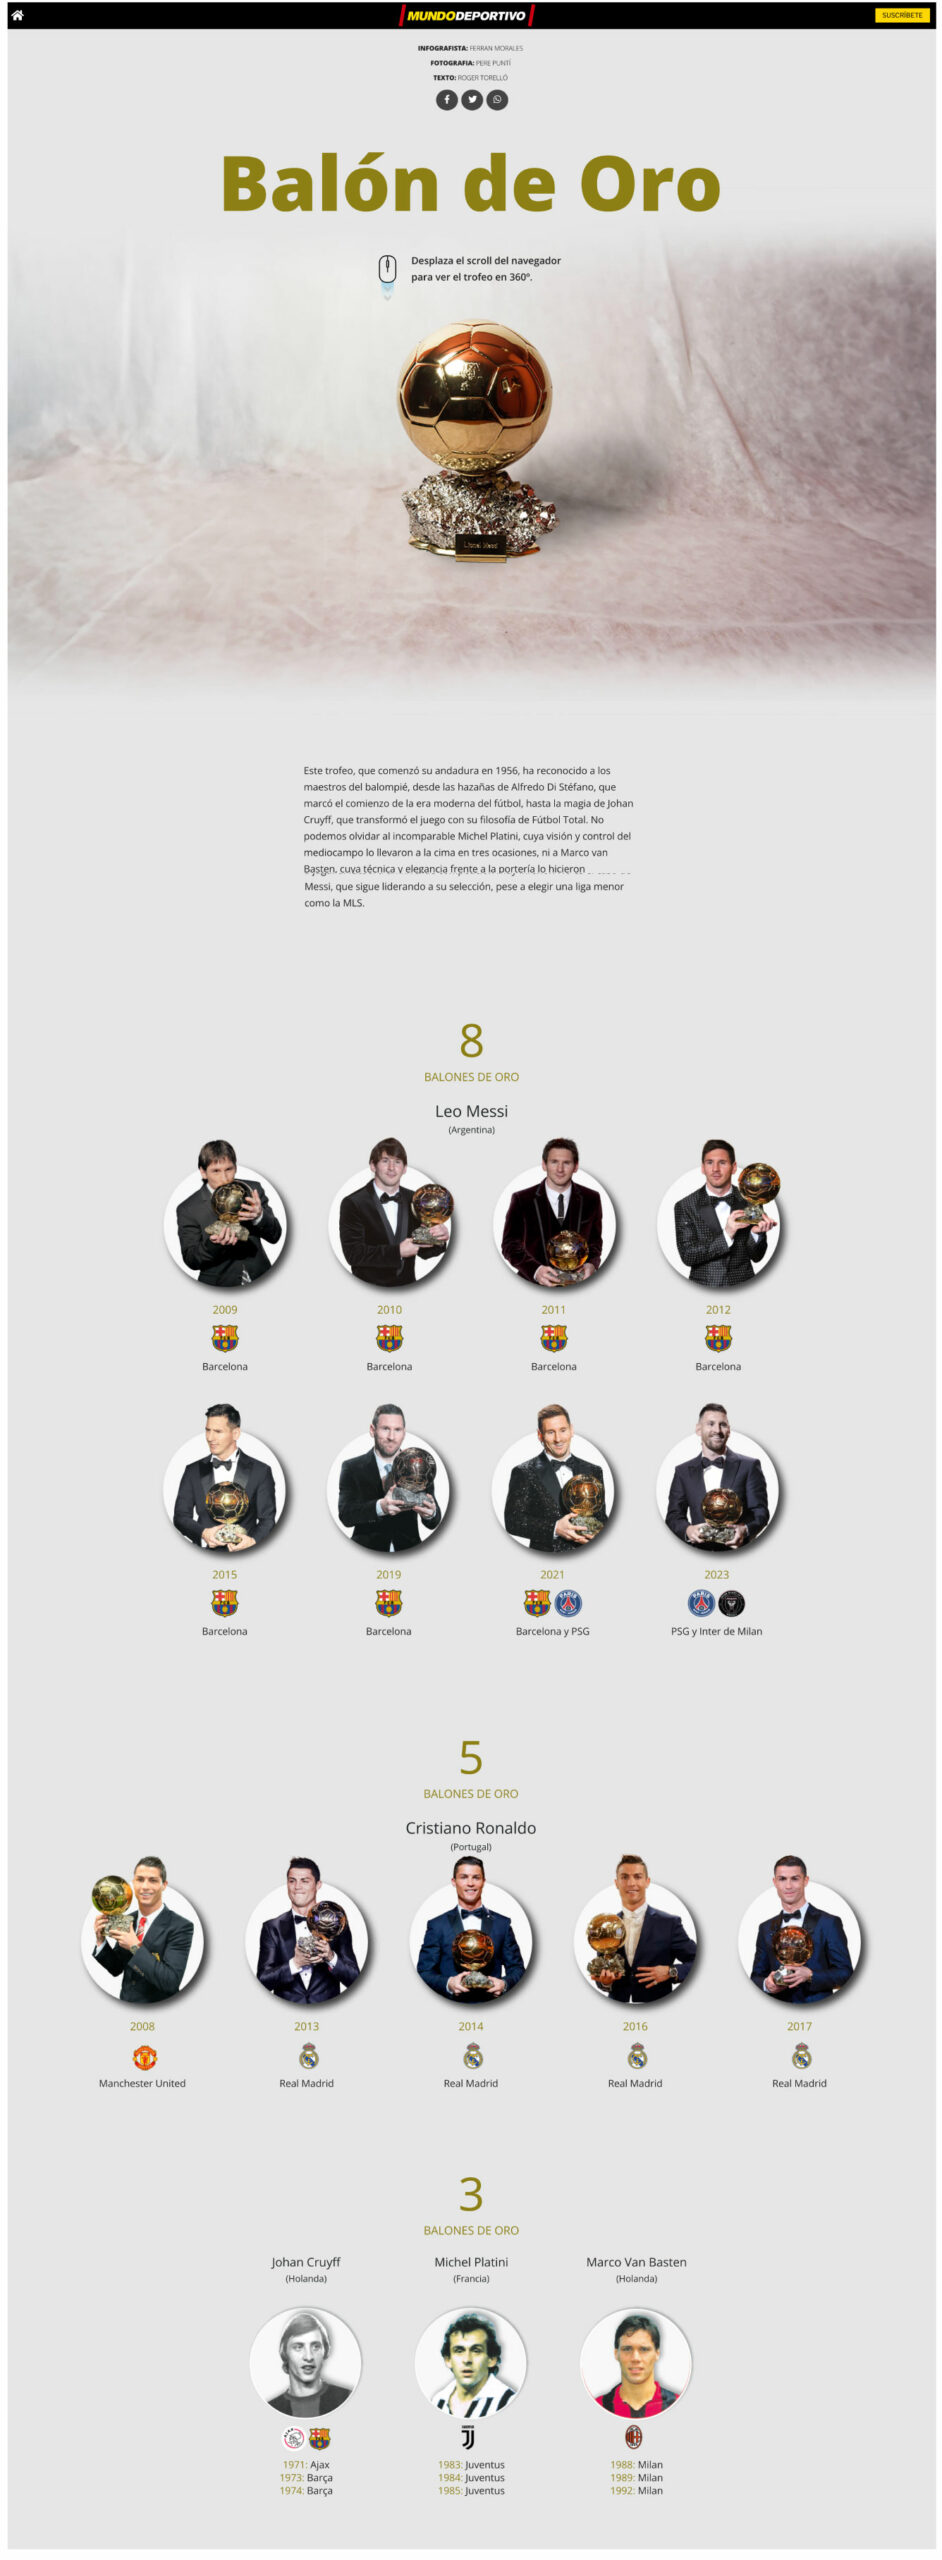 Infografia, Especial web, Stories, todos los vencedores del balón de oro, Messi y Cristiano Ronaldo